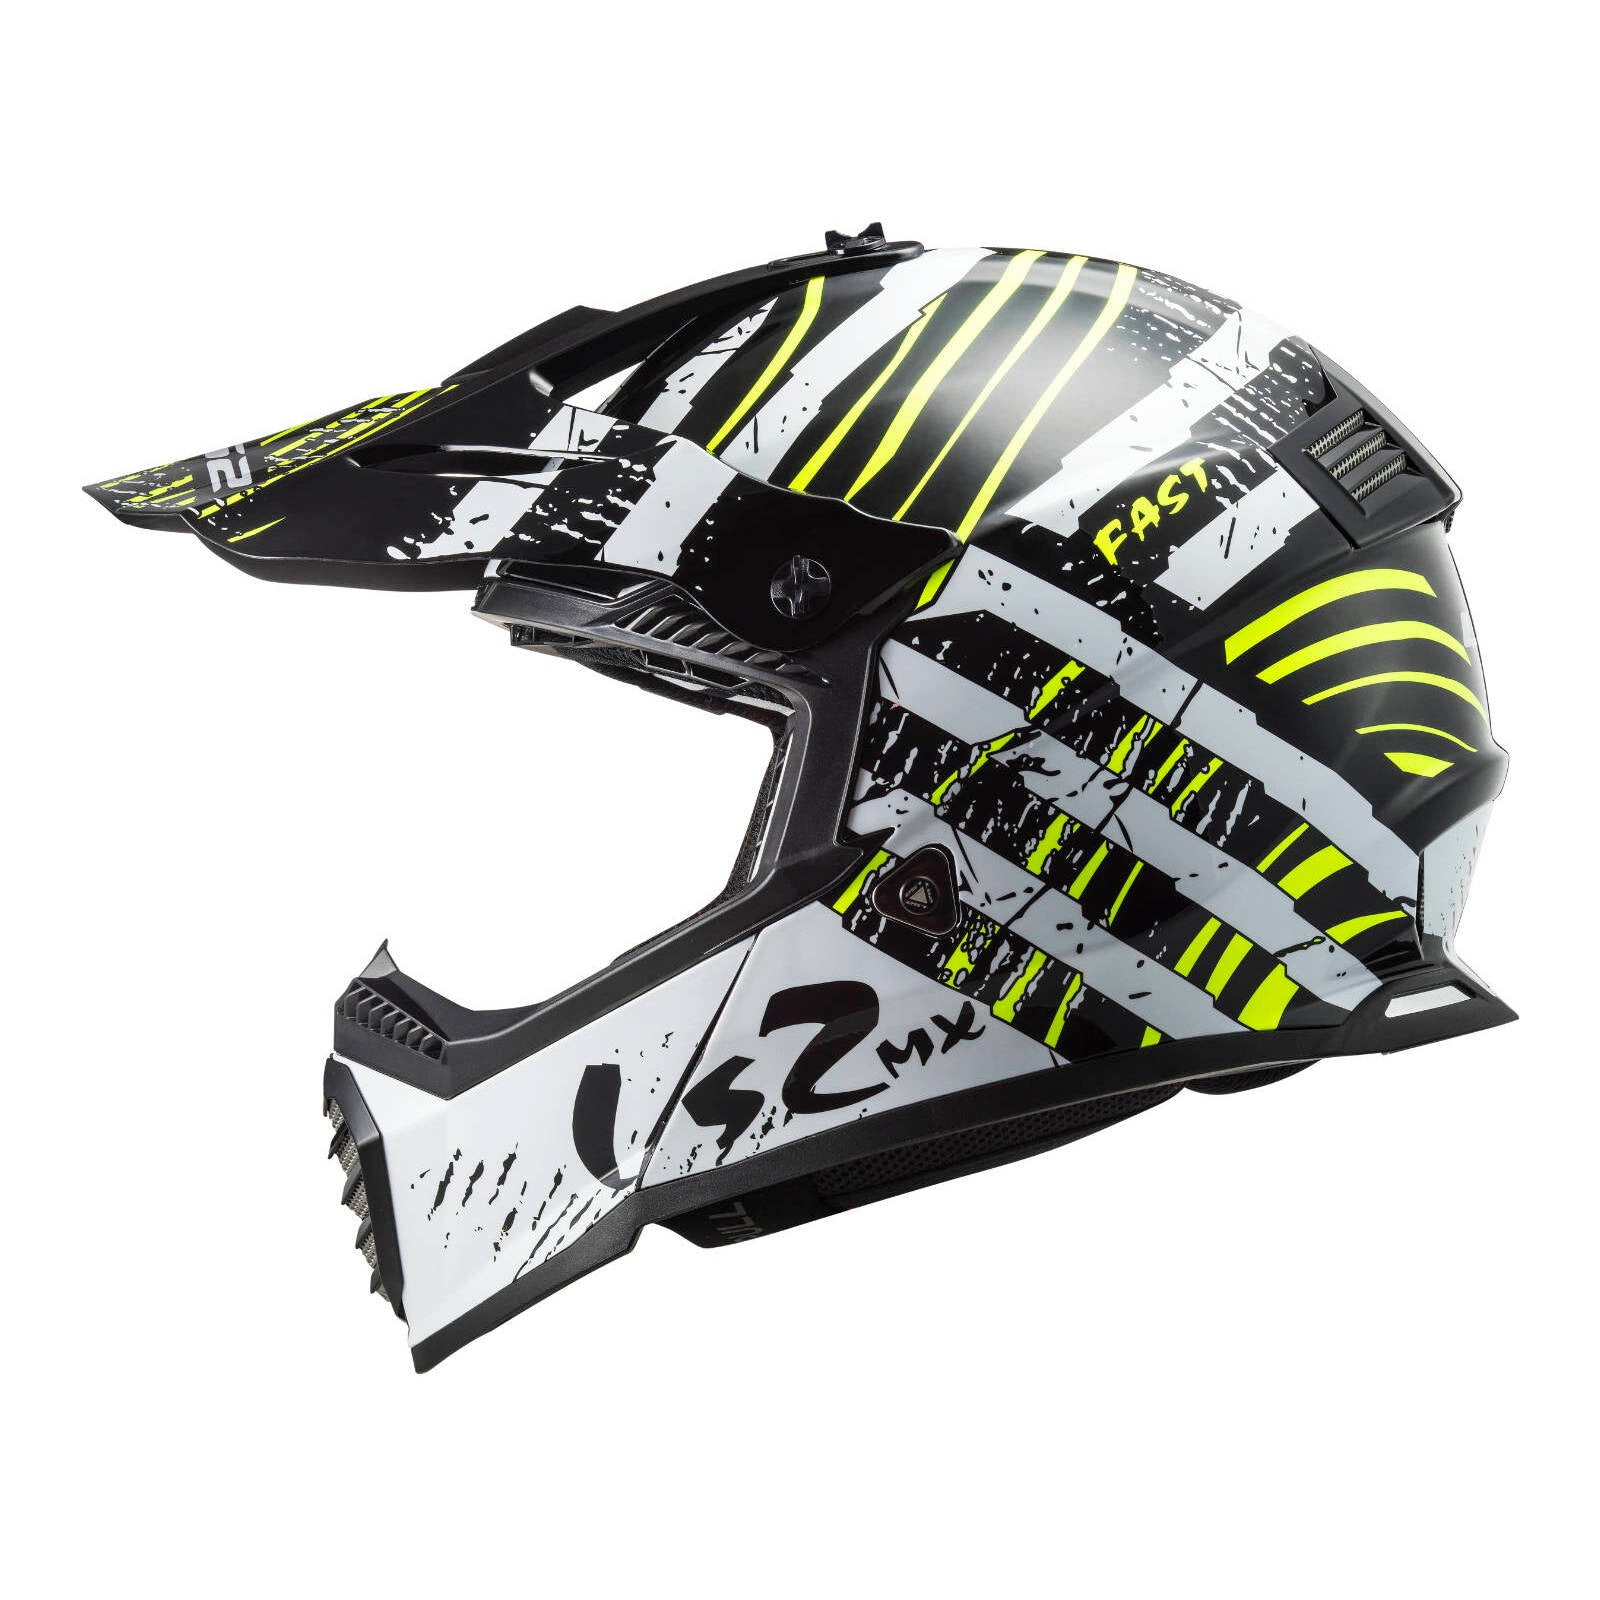 LS2 MX437 Fast Evo Verve Helmet Black / White